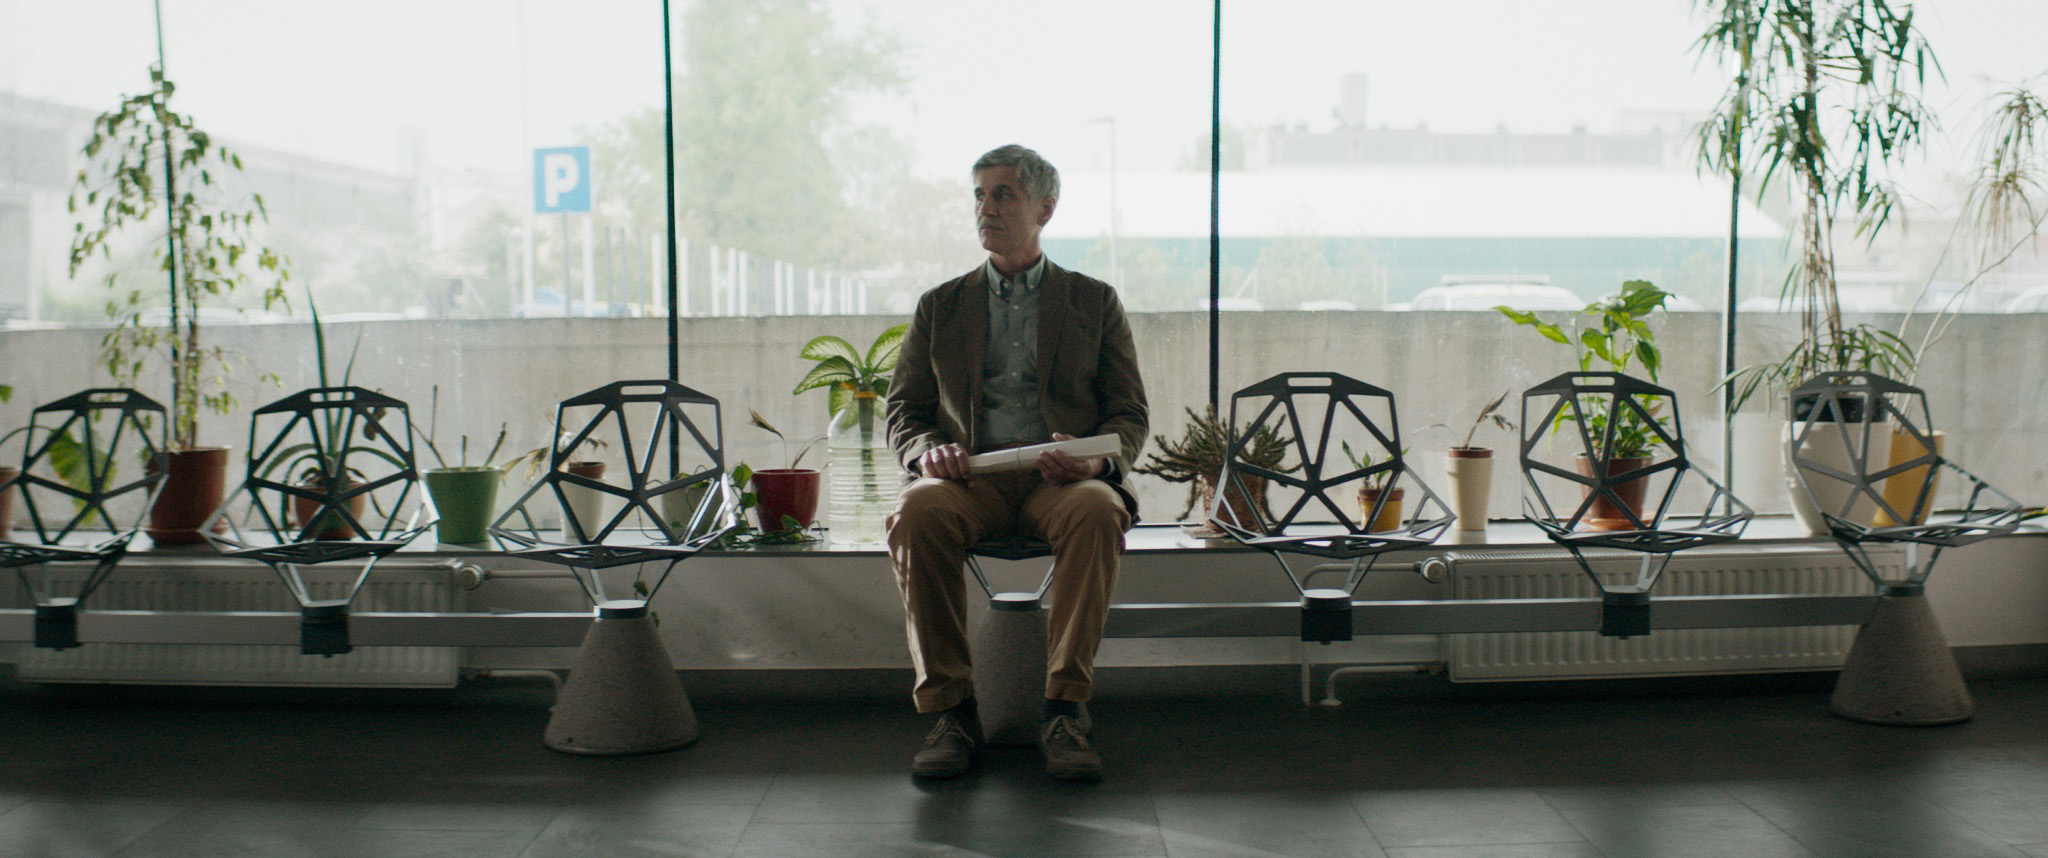 Cena do filme Inventário exibe um homem de meia idade parado em uma sala de espera. Ele segura um rolo de papel no colo. À direita e no fundo, vemos algumas plantas que servem de decoração para o local. Ao fundo, vemos a cidade, embaçada pelo vidro. 